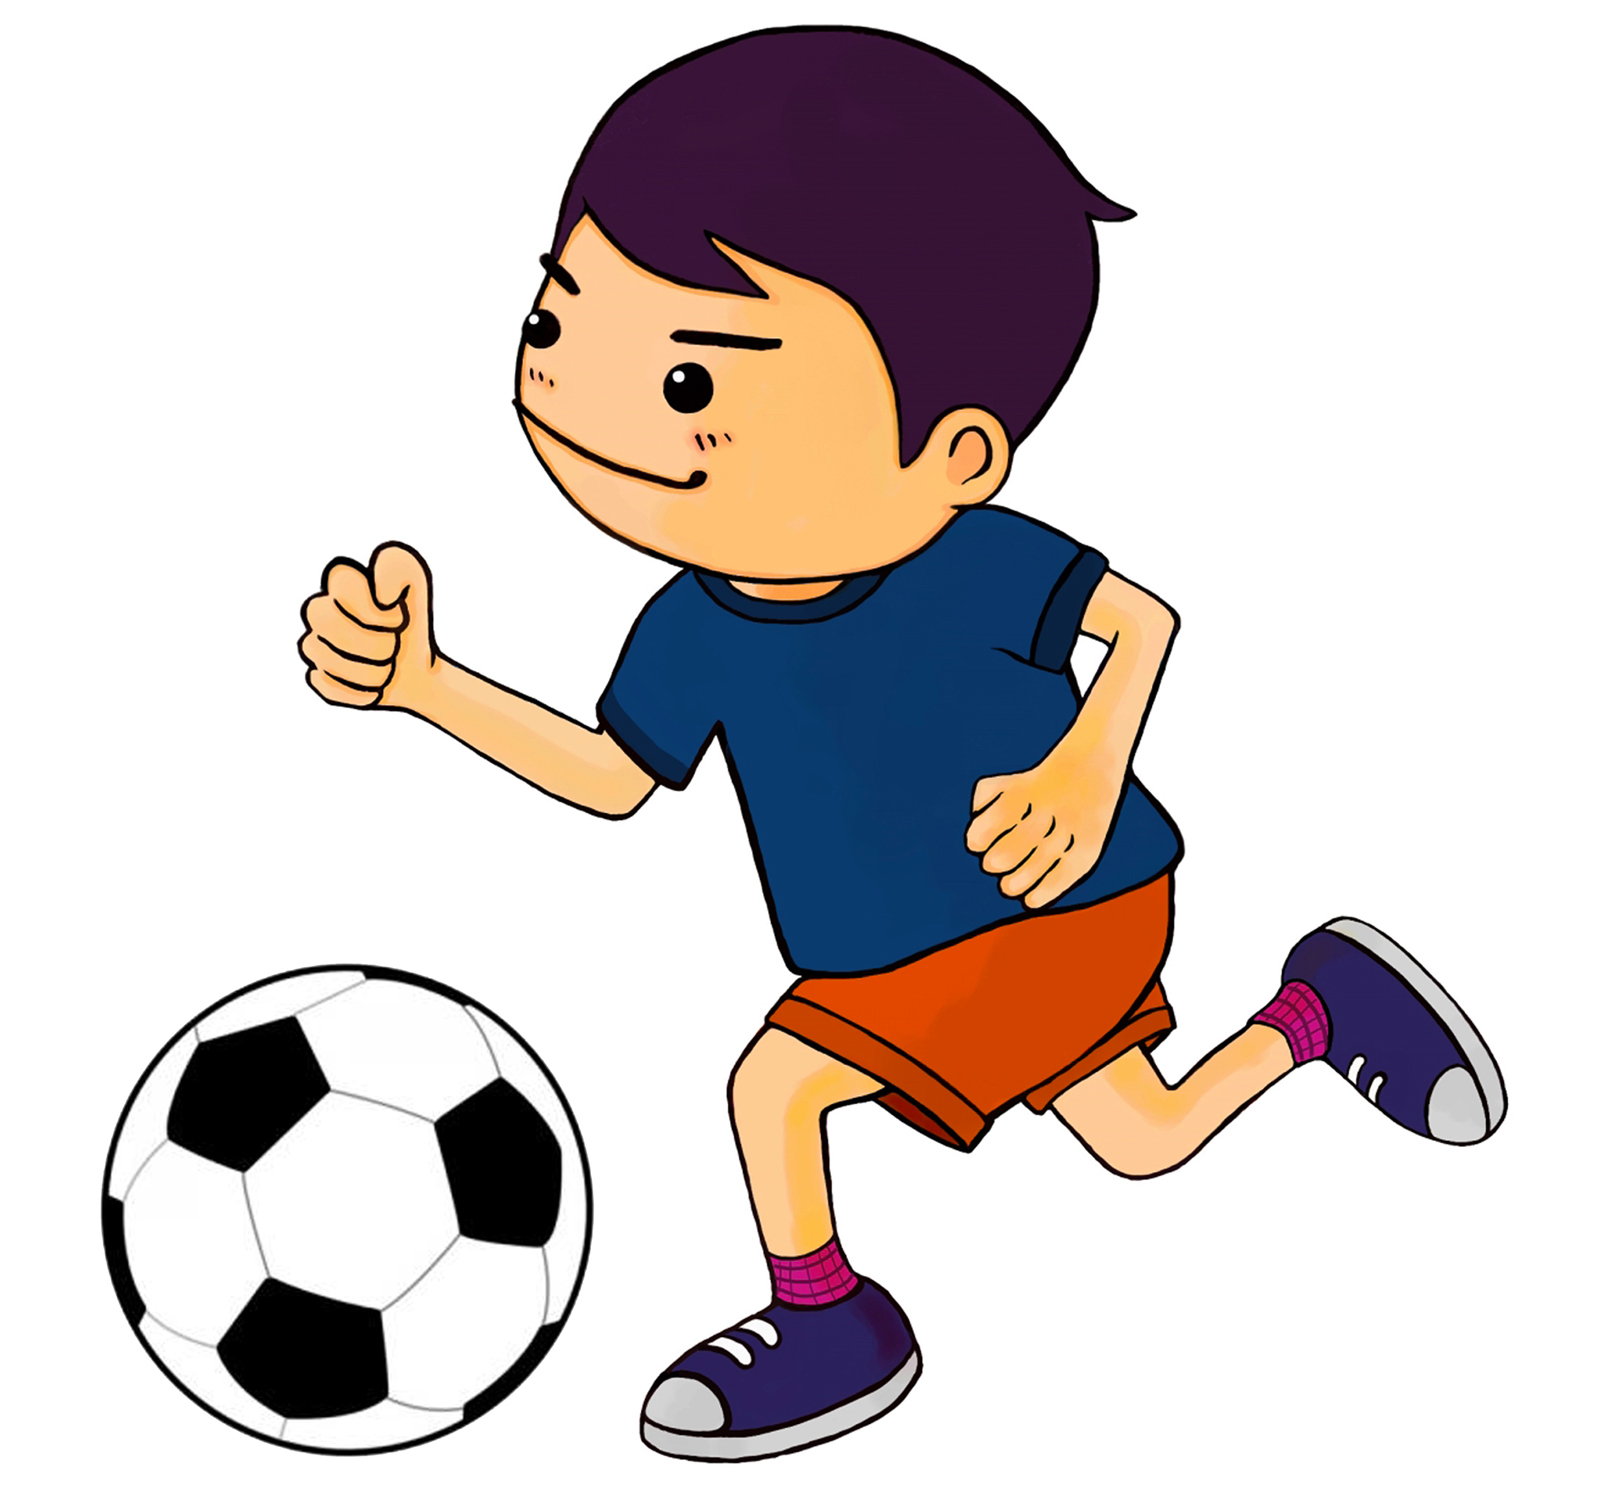 サッカーで体が小さい選手でも活躍できる「5ステップ・ドリブル上達法」DVD